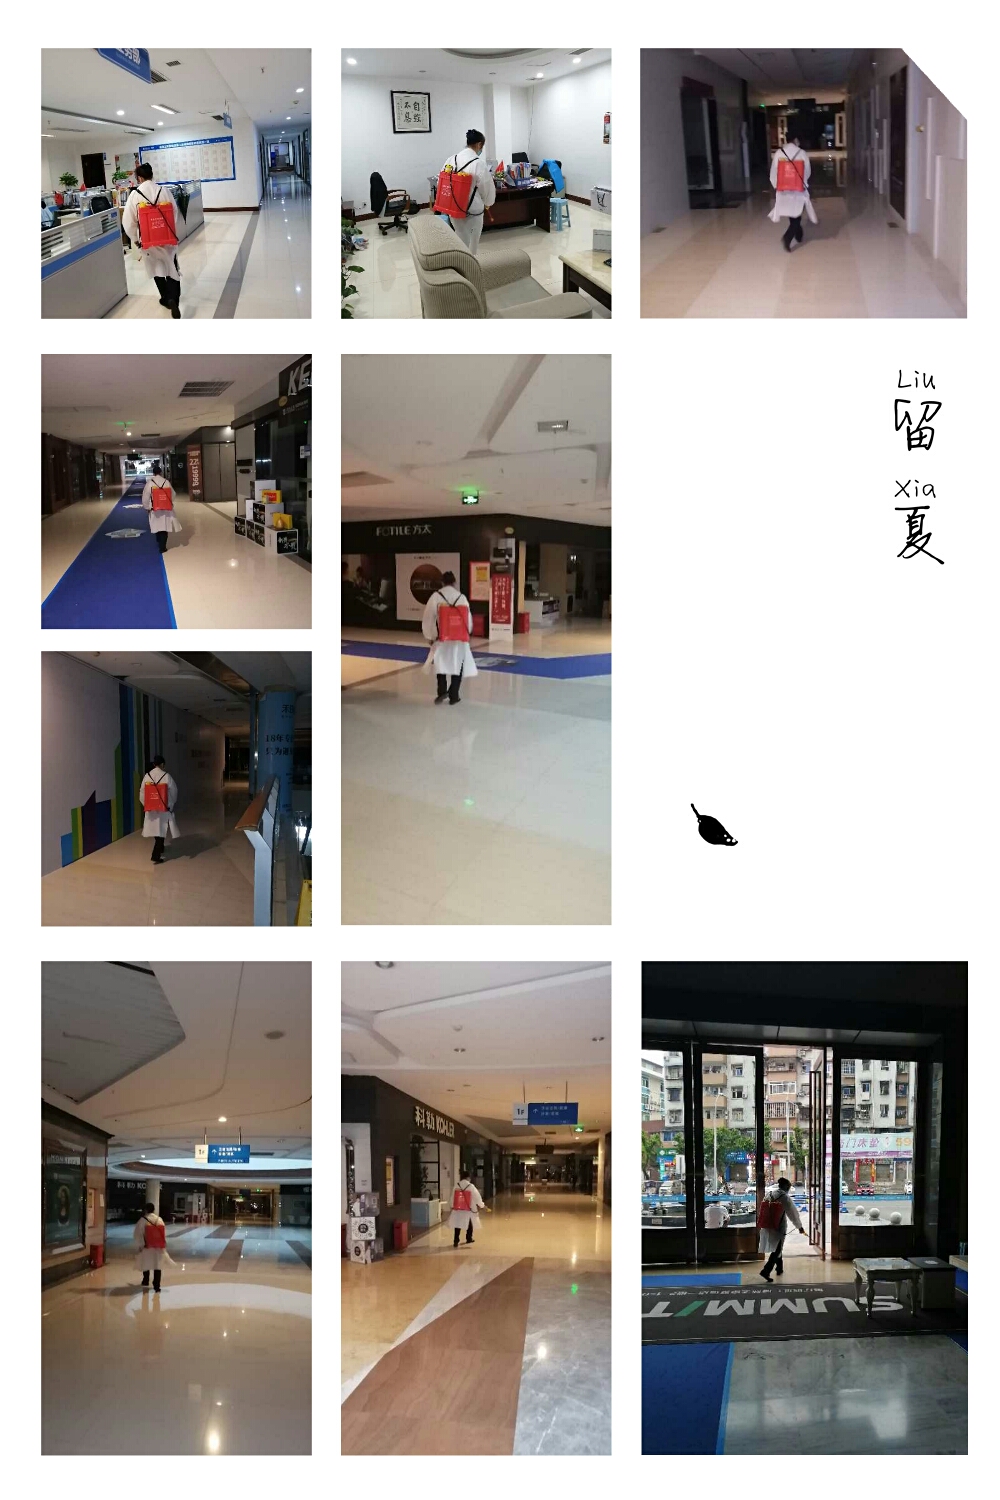 重庆聚信物业管理有限公司 环境照片活动图片